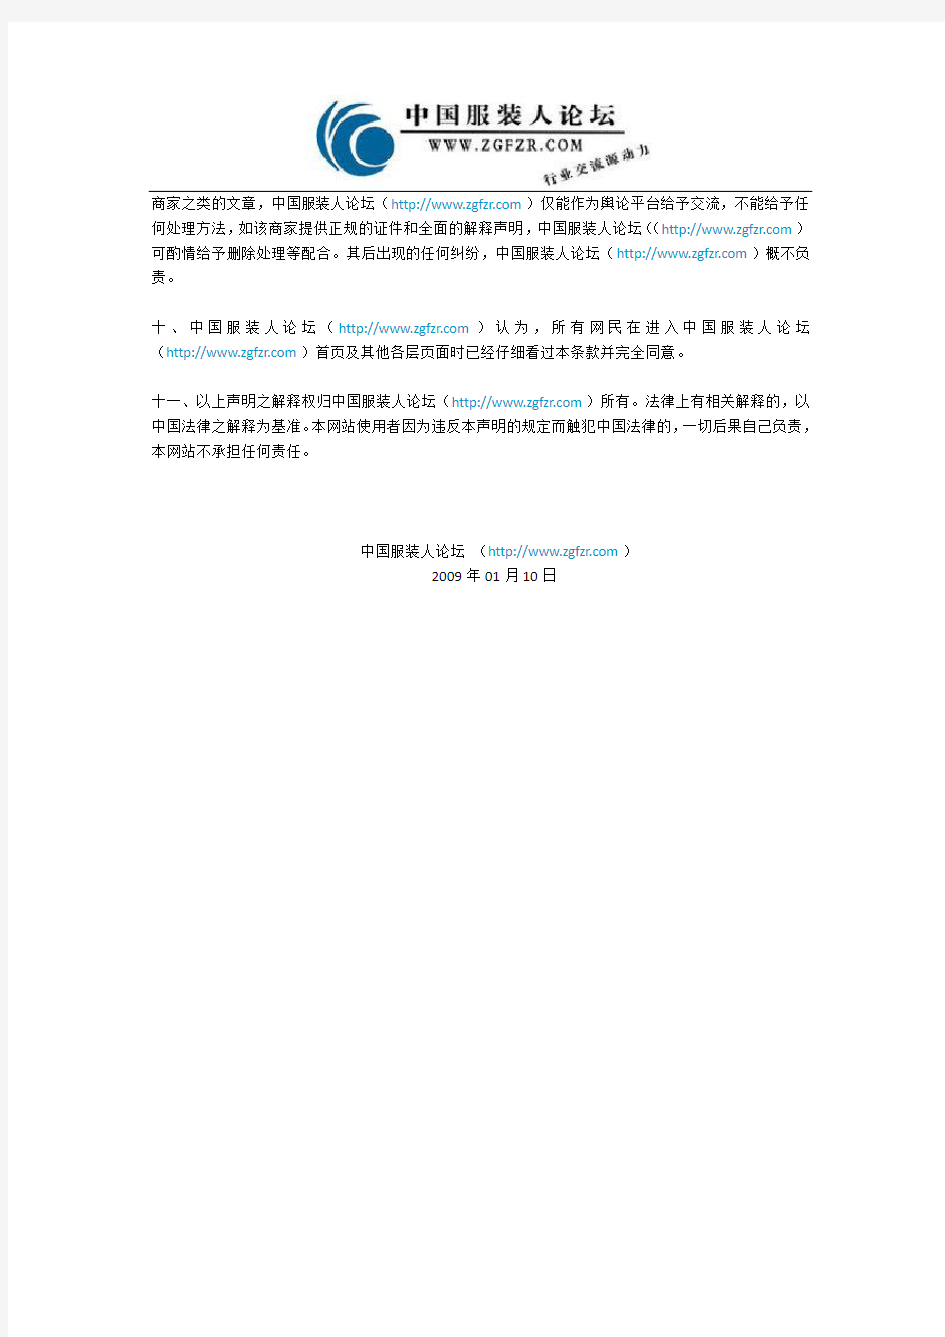 中国服装人论坛关于版权及免责声明